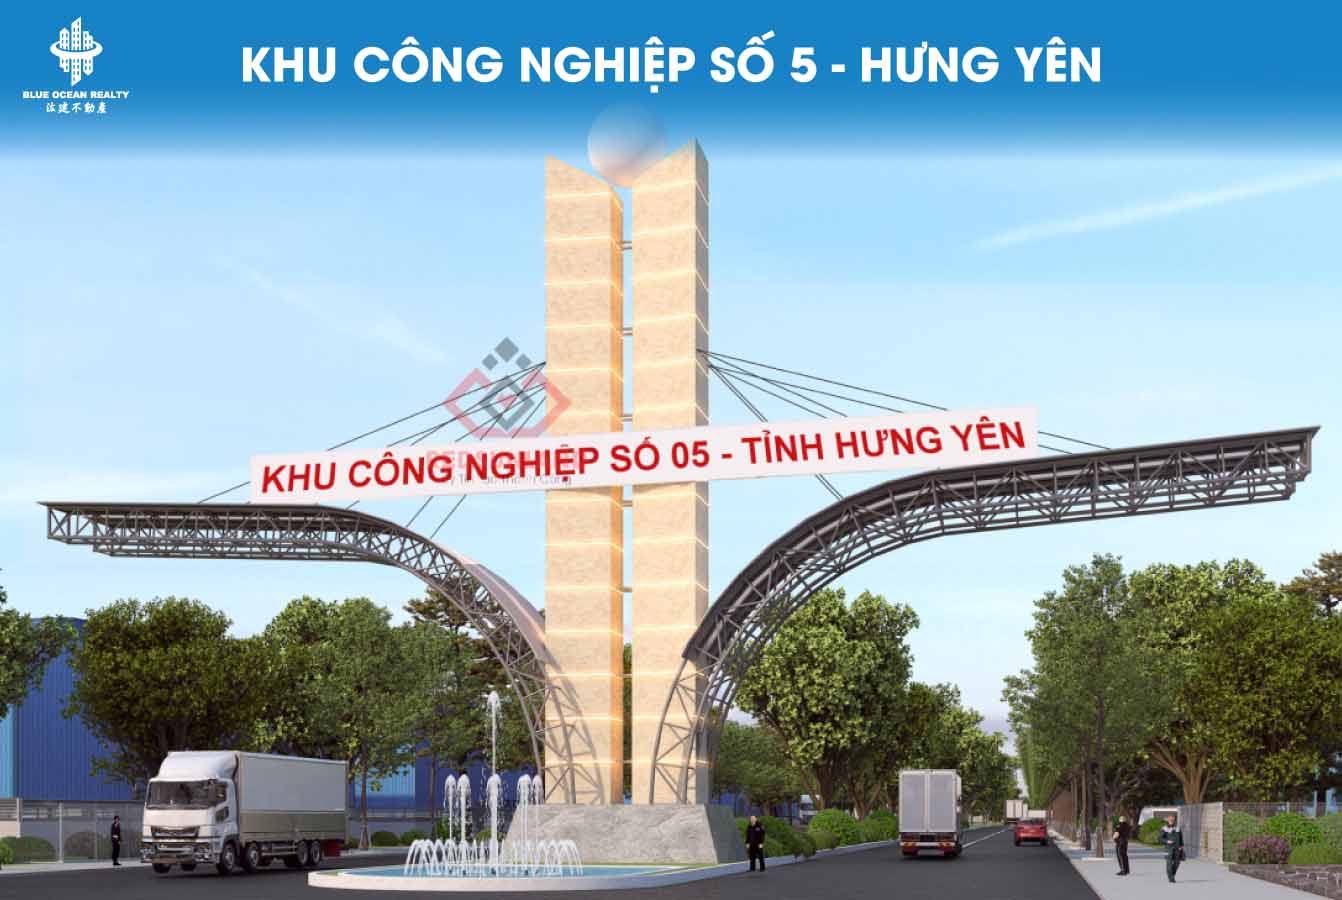 Khu công nghiệp (KCN) số 5 - Hưng Yên